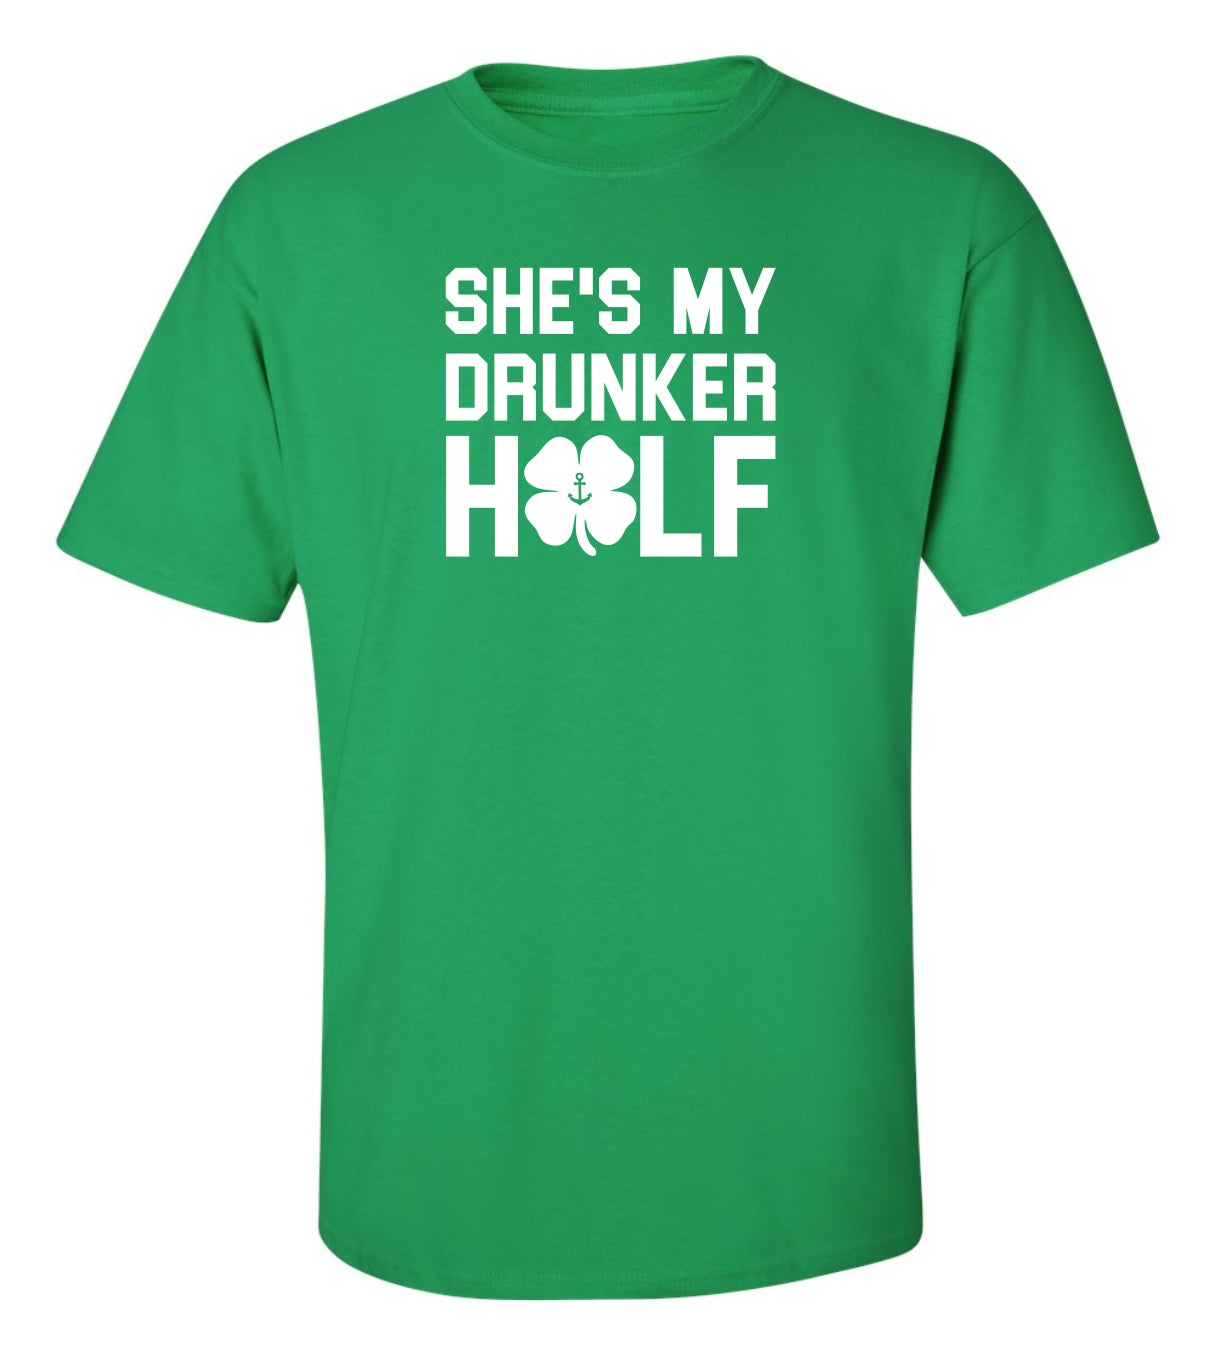 "She's My Drunker Half" T-Shirt